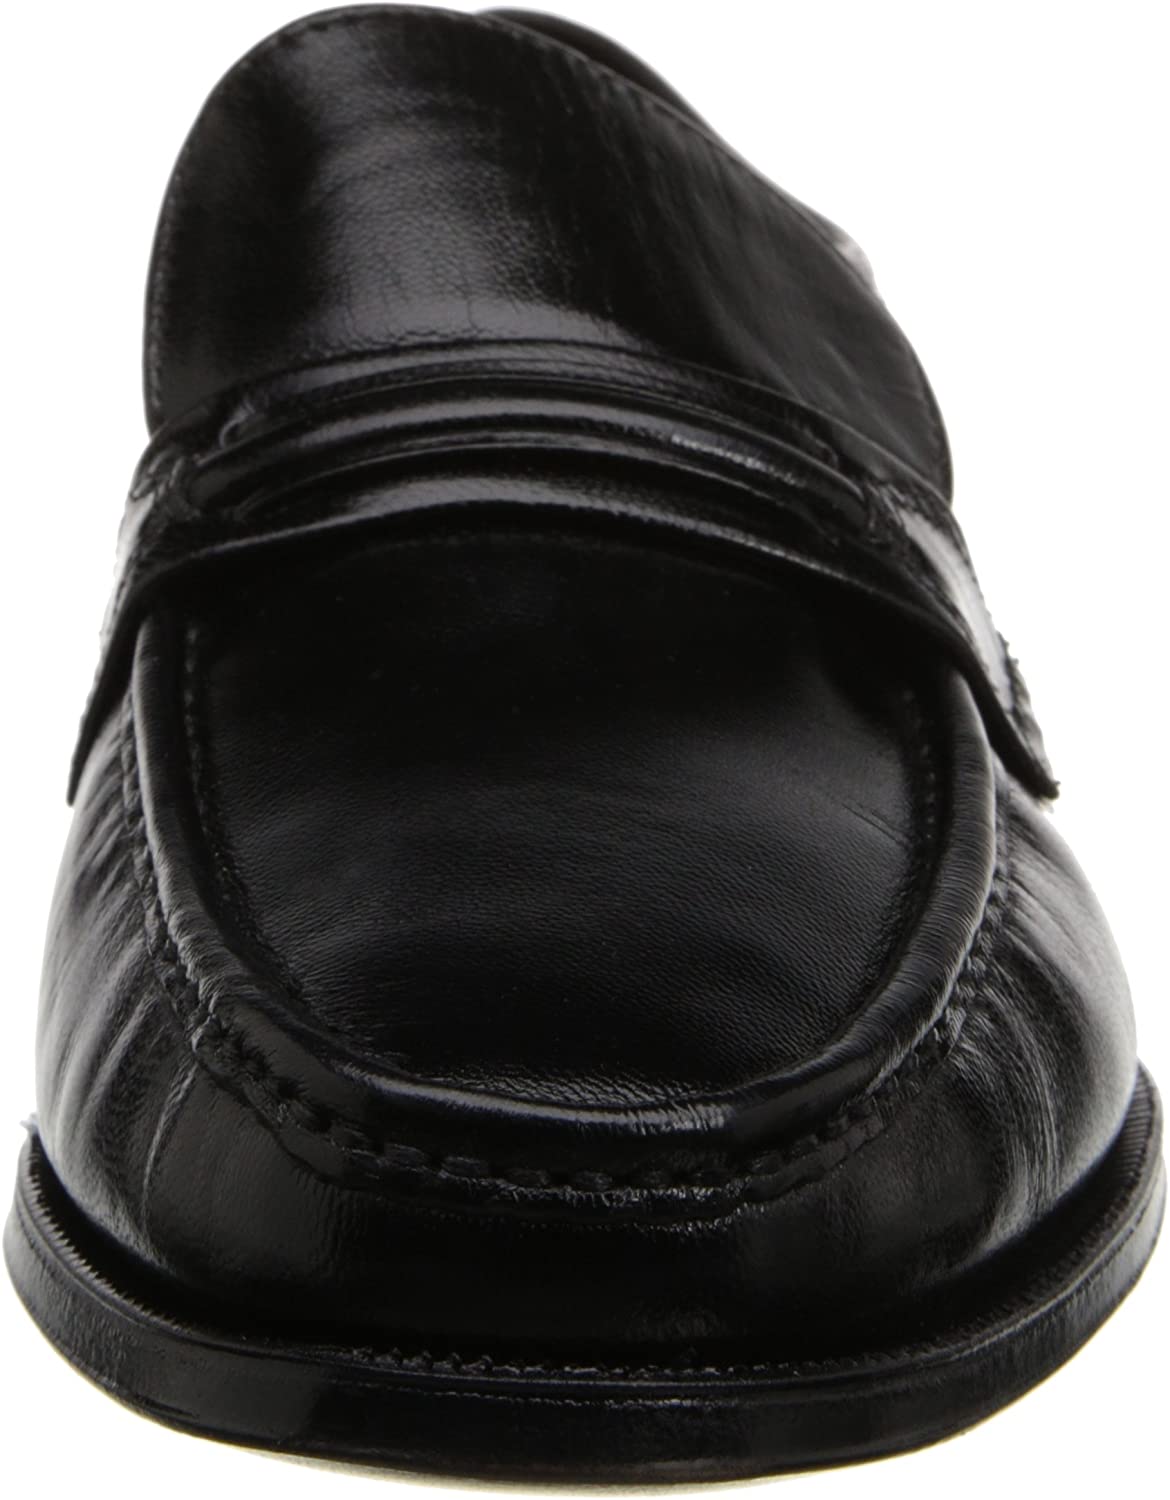 Men's Shoes Florsheim Como Black Leather loafer 17089-01 - image 2 of 7